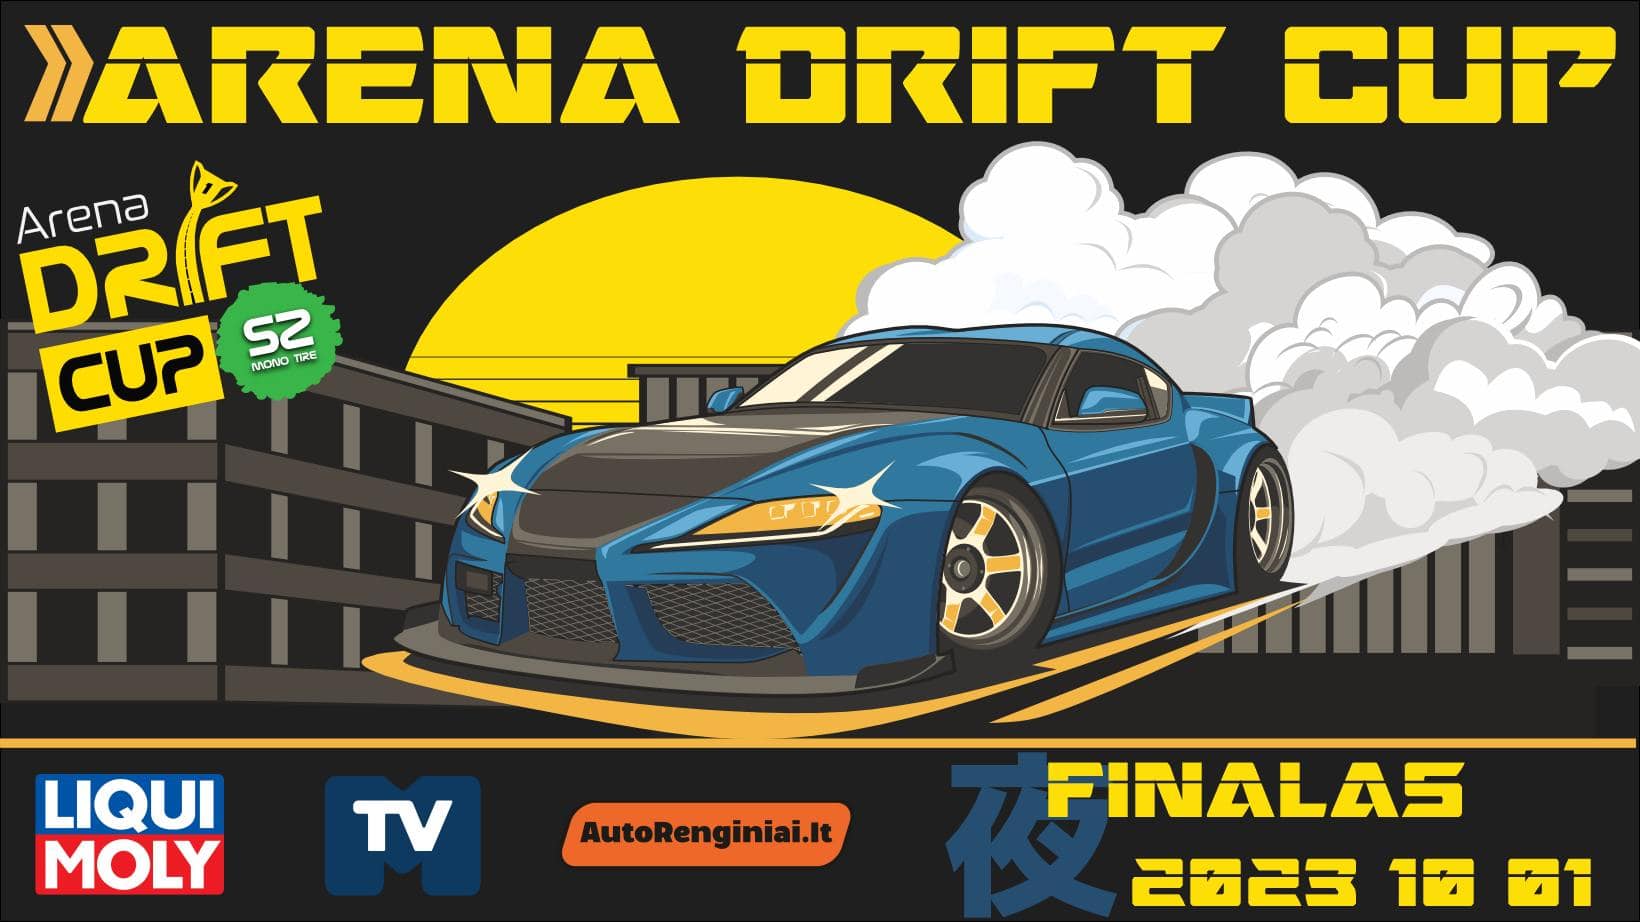 Arena Drift Cup Finalas - Limited tire drift cup